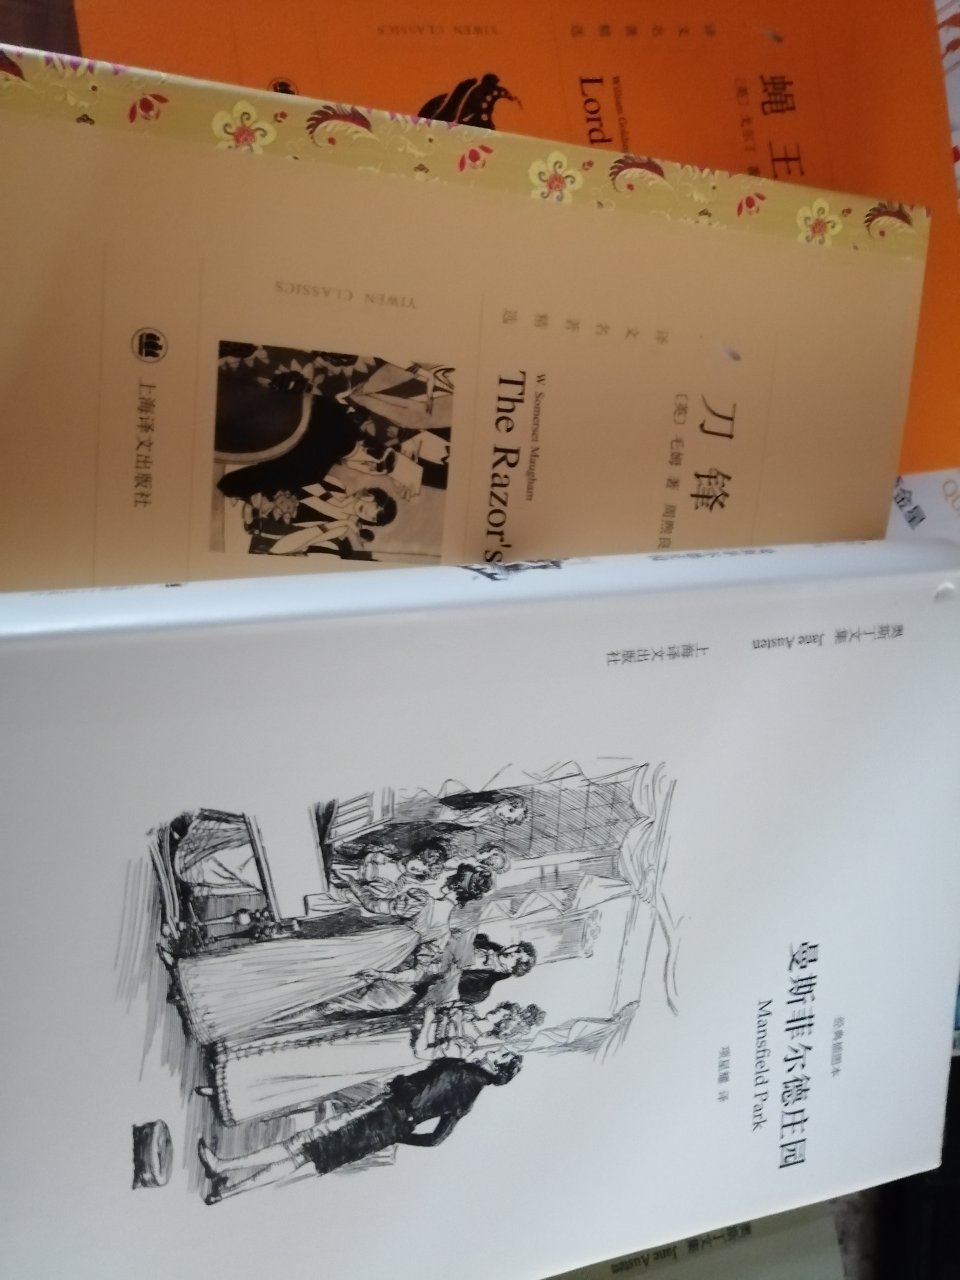 上海译文出版社外文书籍，翻译比较不错，喜欢